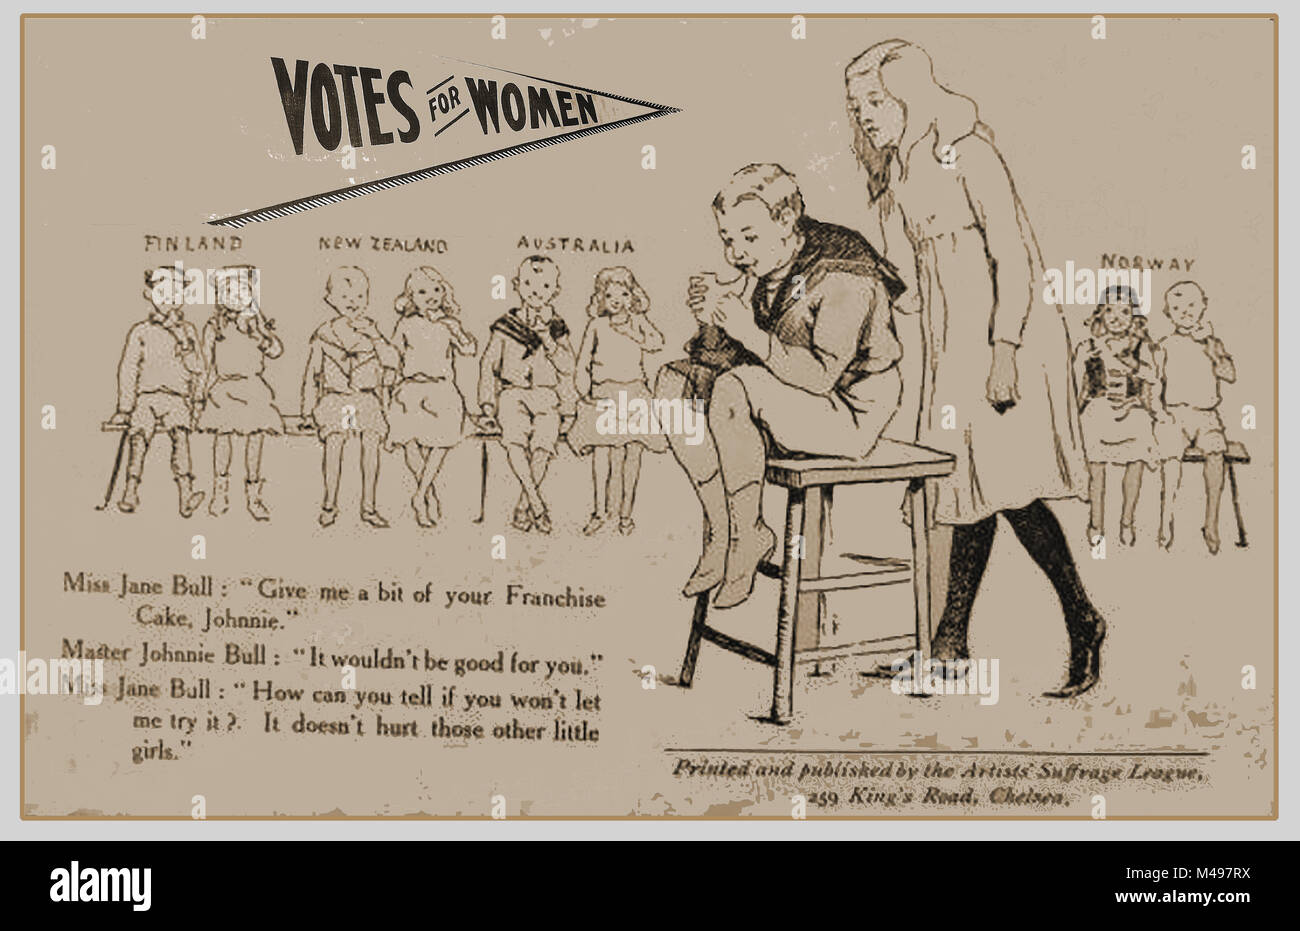 - Un viejo SUFFRAGETTES sufragio del artista Liga Internacional de ilustración - el voto de la mujer (Finlandia, Nueva Zelanda, Australia y Noruega) Foto de stock